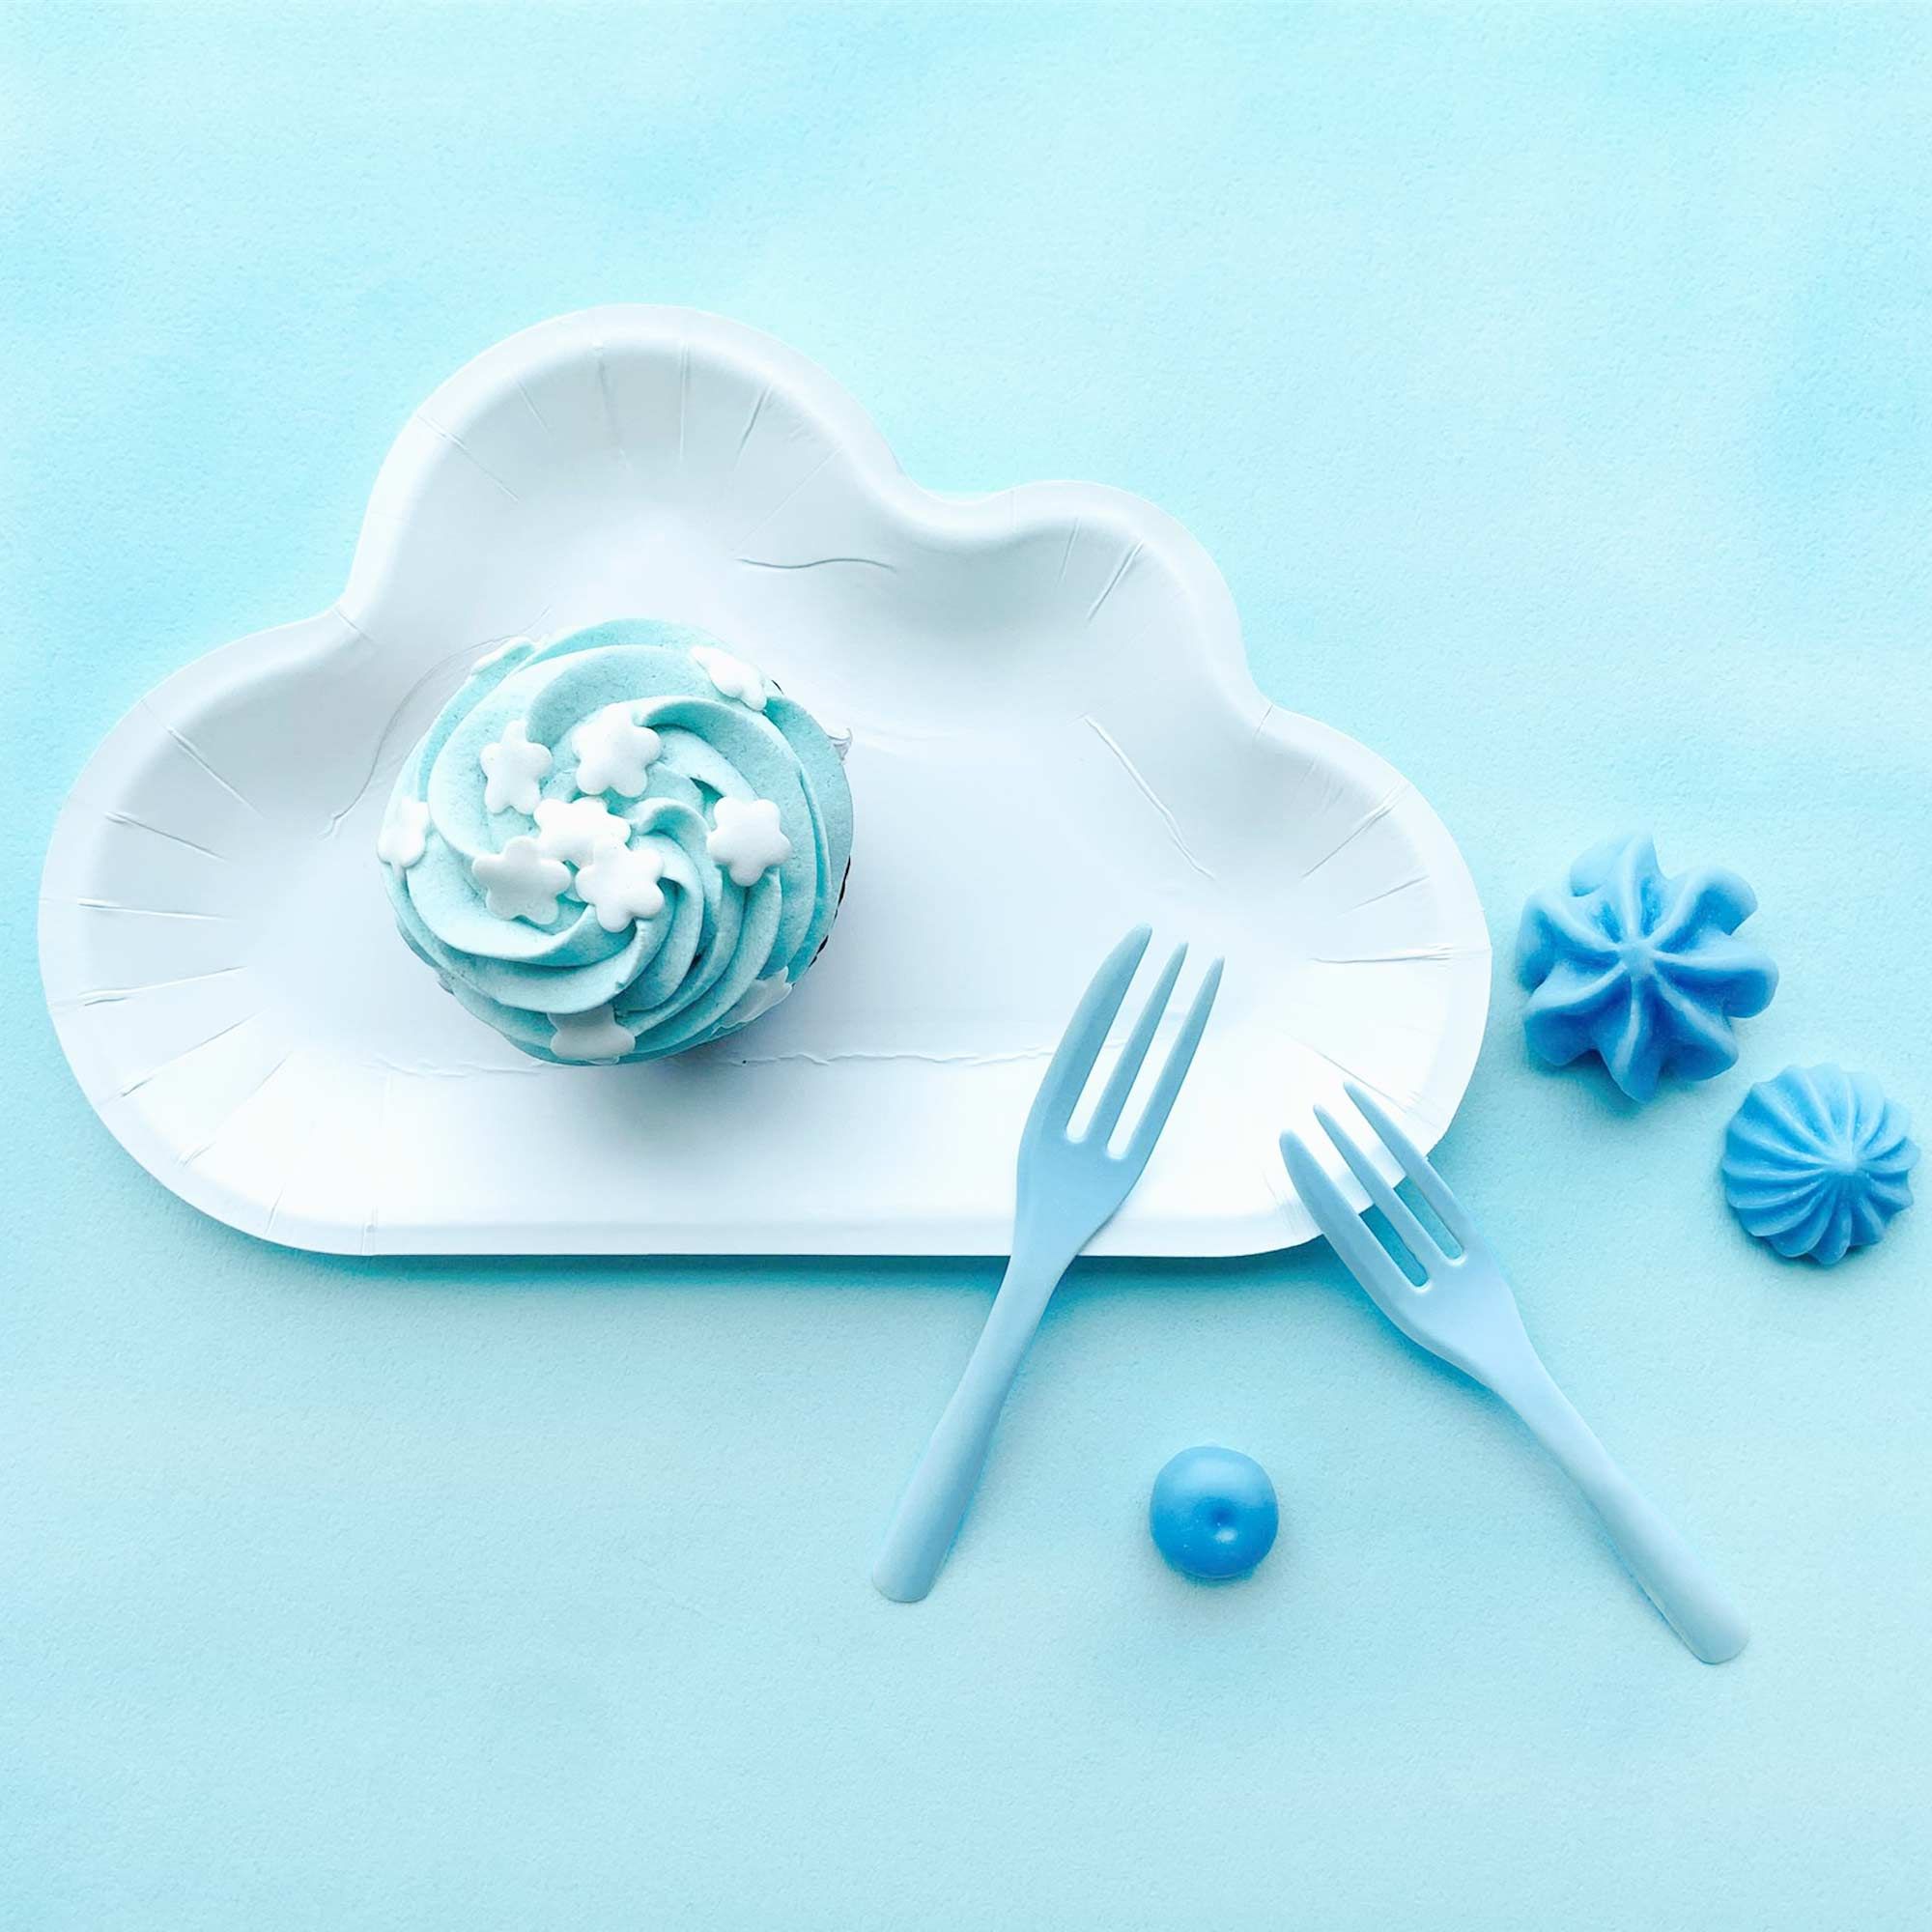 L'assiette en forme de nuage blanc associée à des fourchettes à gâteau bleues crée une atmosphère évoquant un ciel bleu avec des nuages moelleux.